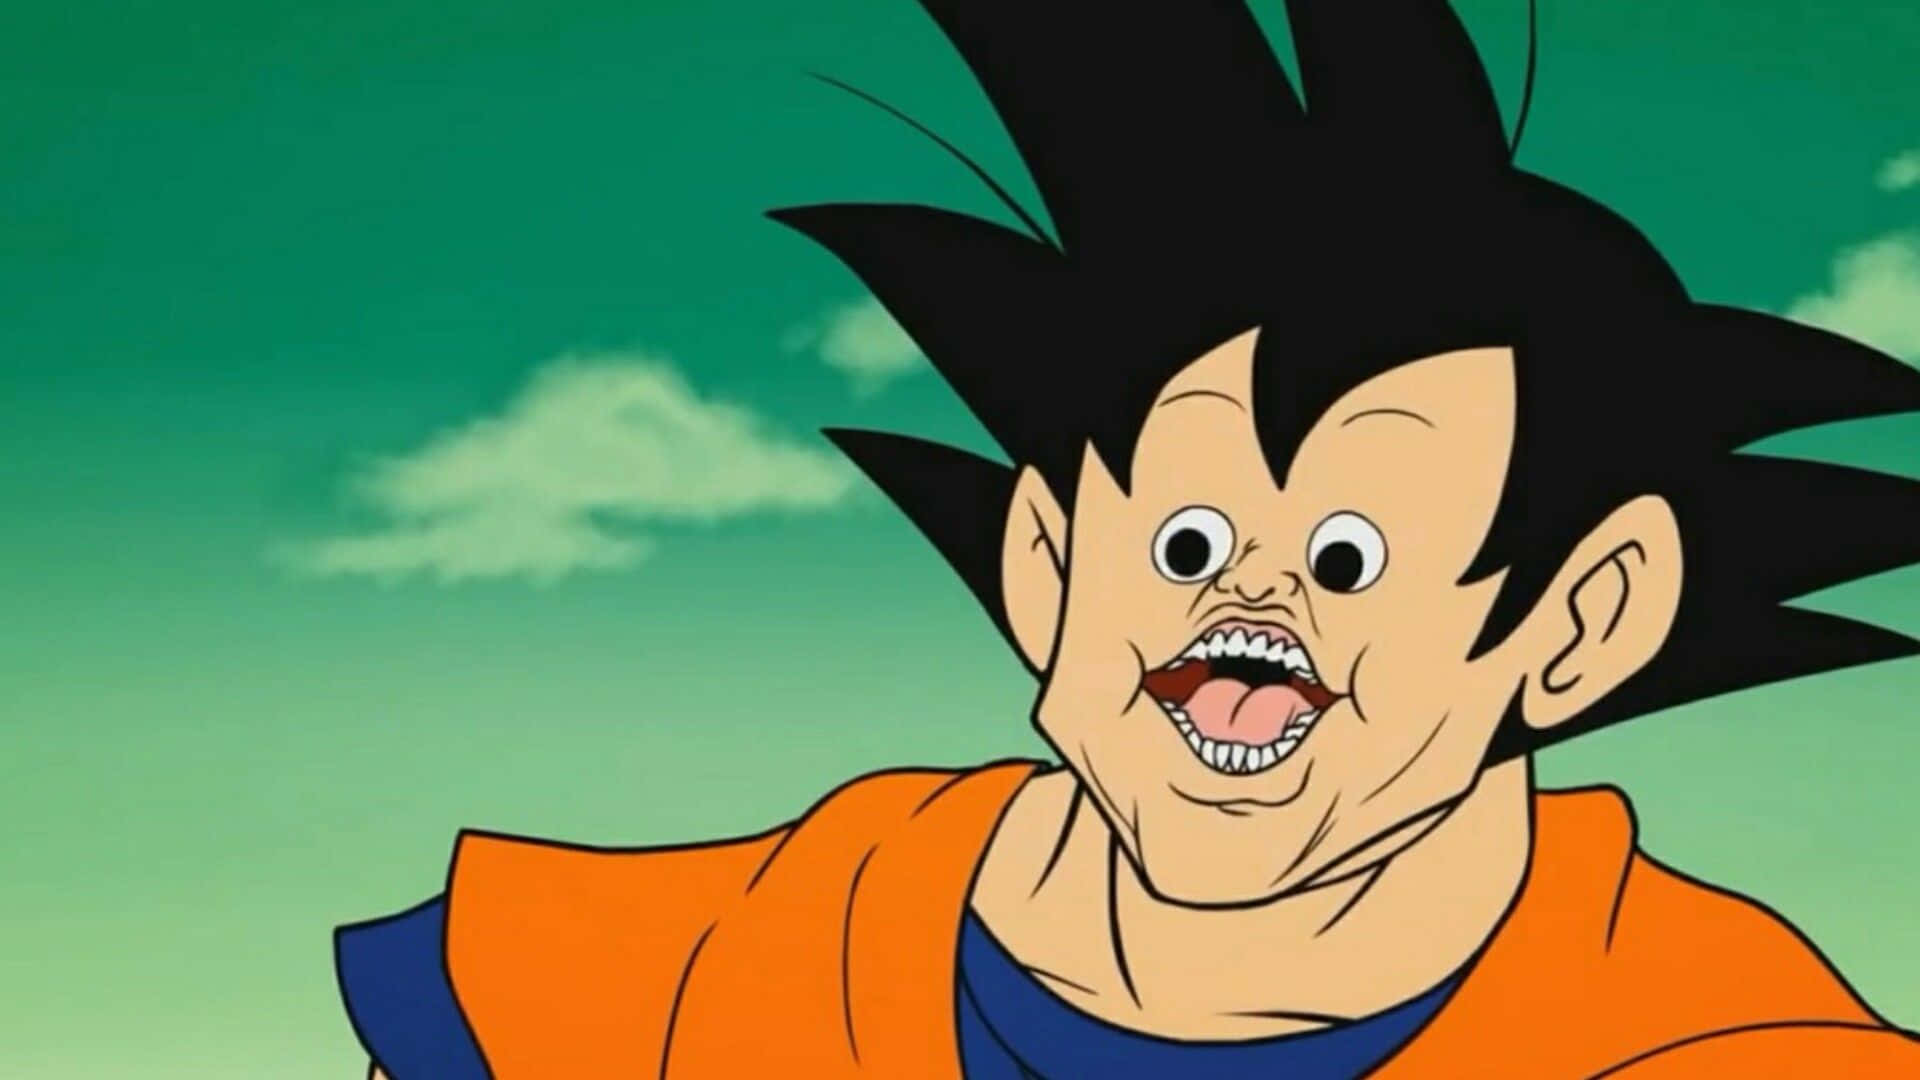 Funny Face Son Goku Wallpaper